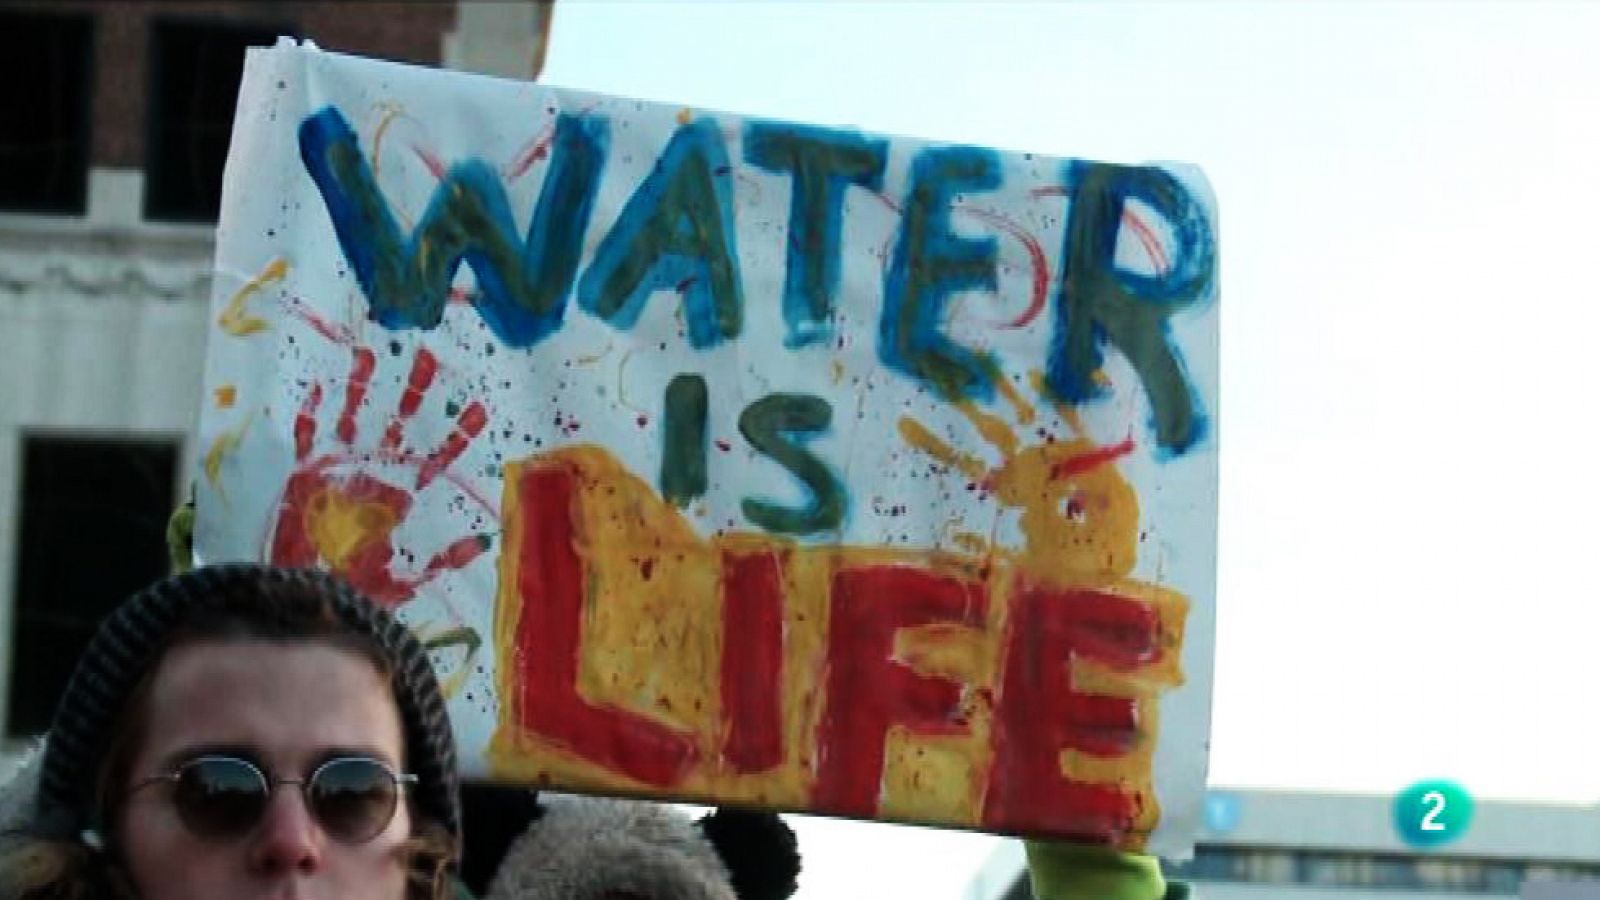 La 2 Noticias - Crisis del agua en Flint: 18 meses bebiendo agua envenenada